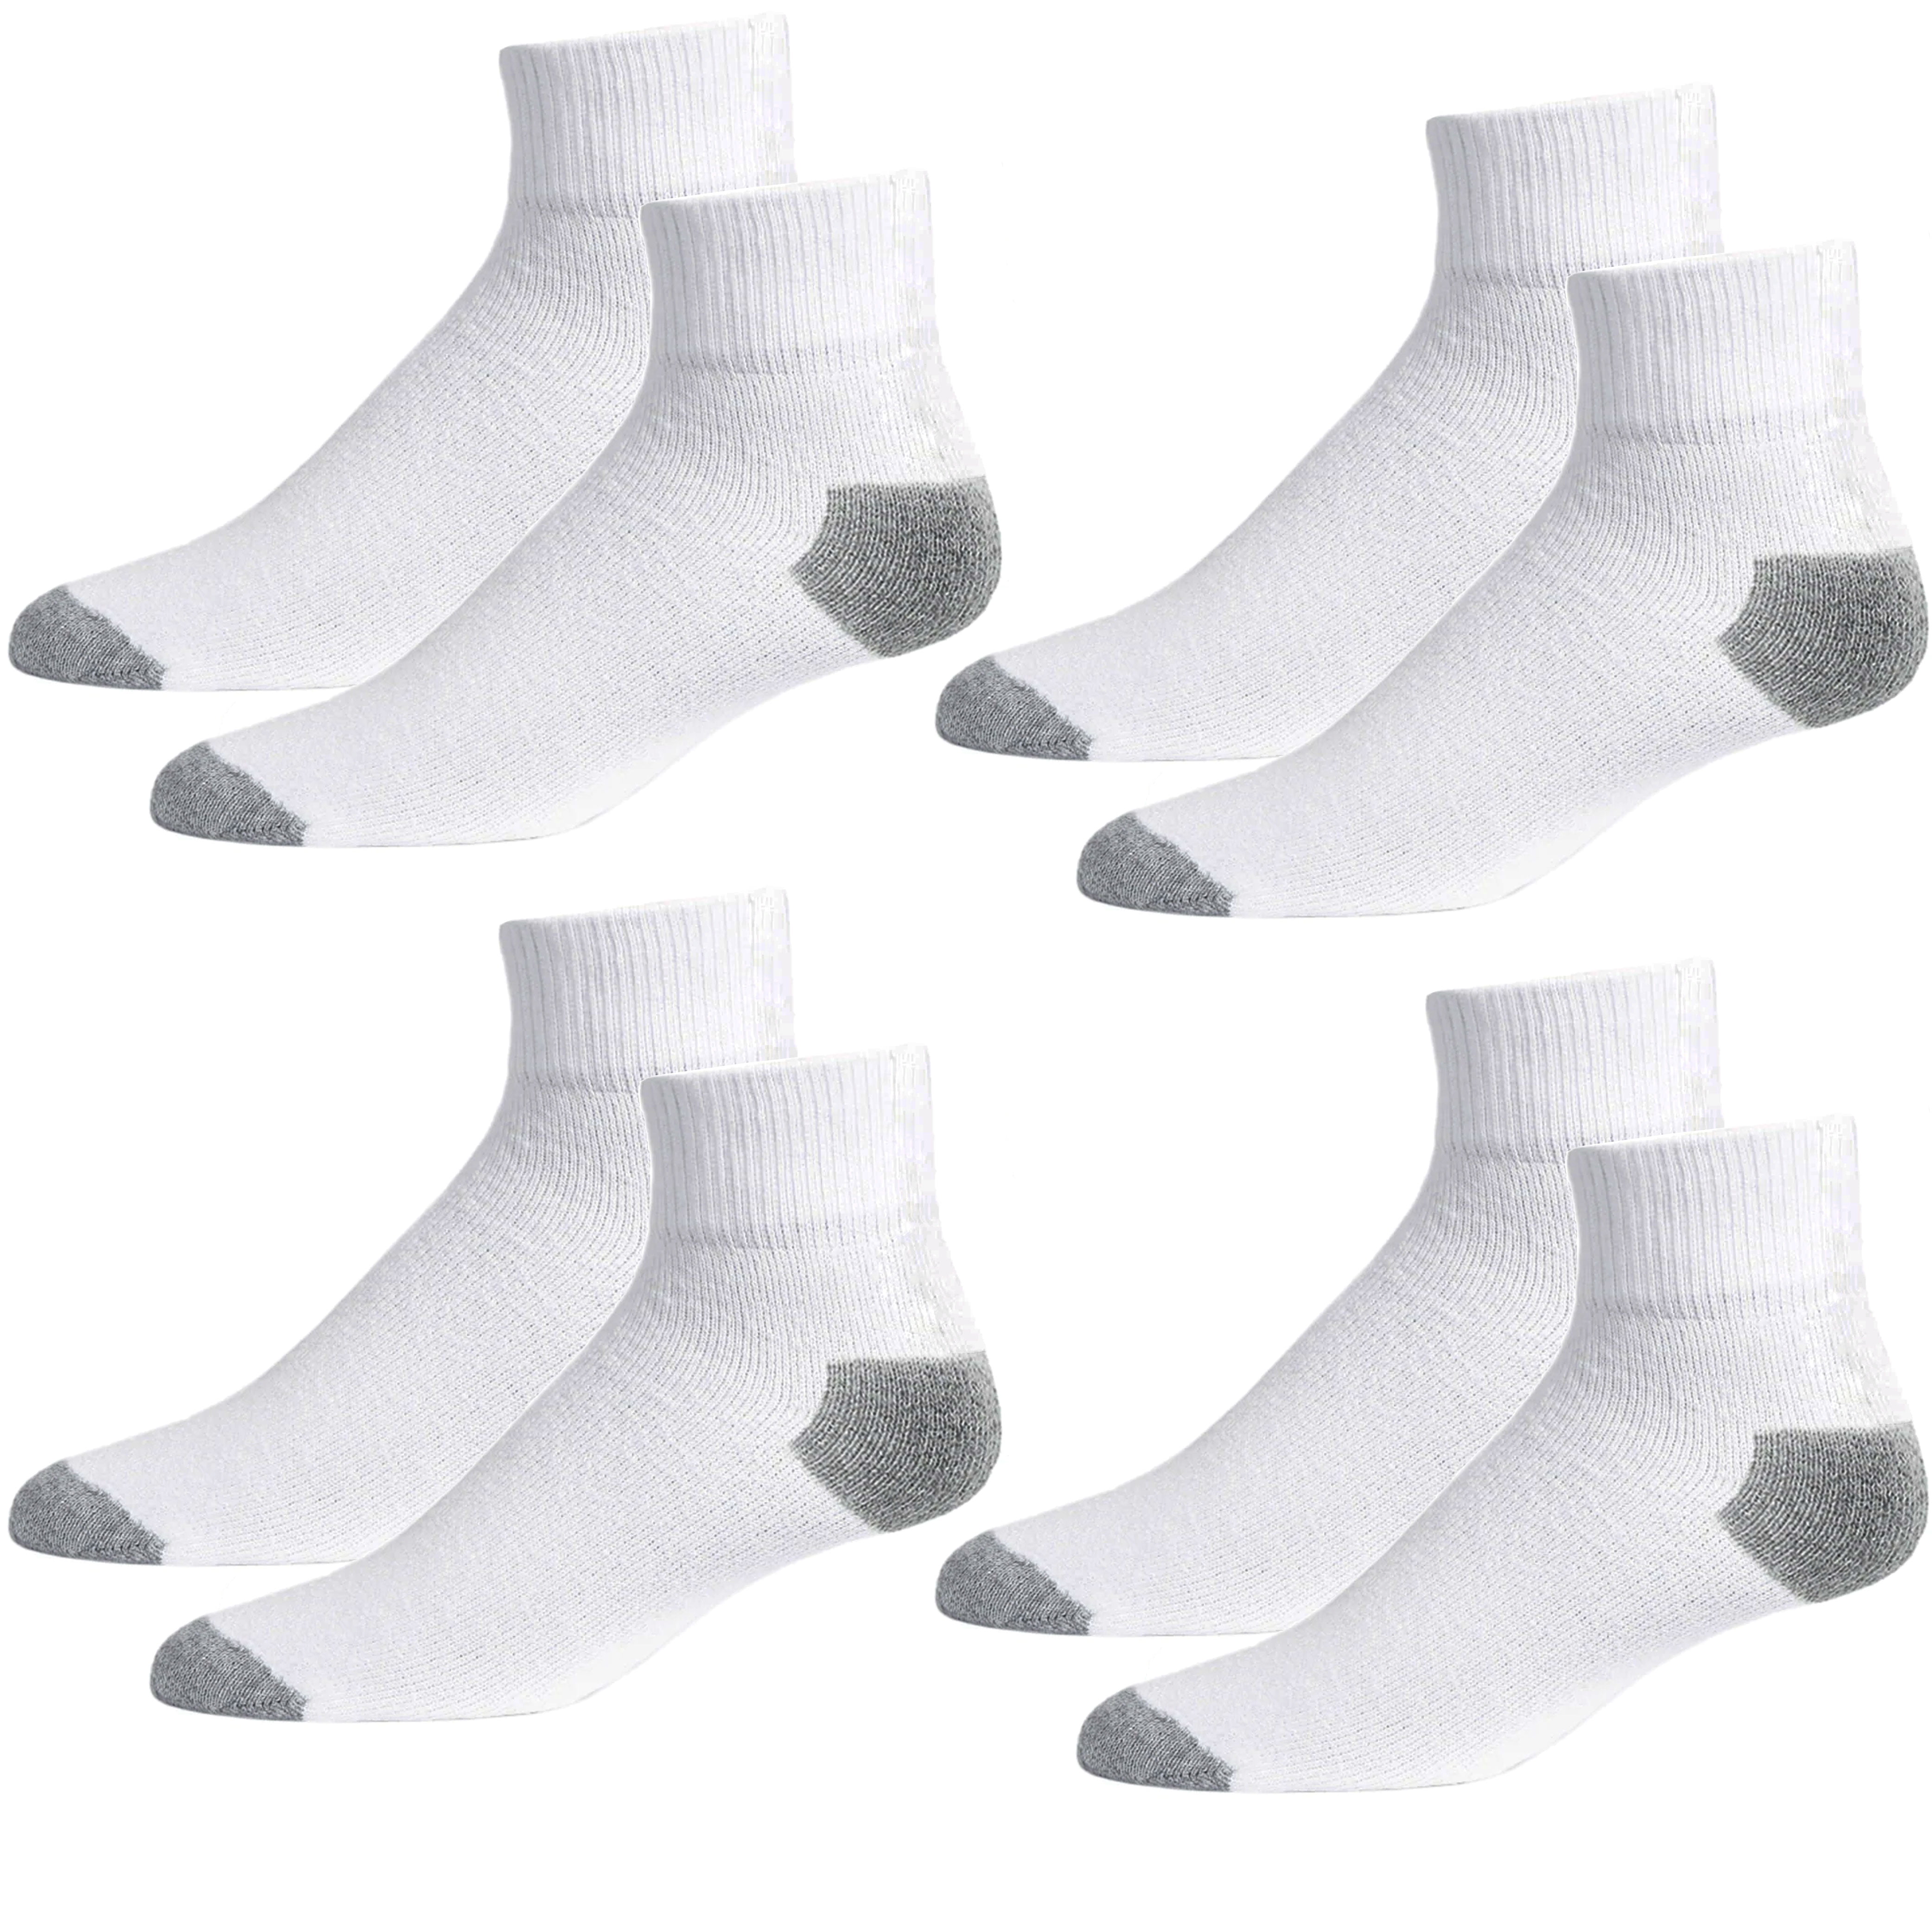 国連安保理が Tigeen 72 Pairs Quarter Ankle Sock Sport Ankle Socks Bulk Adult  Unisex Cotton Sock Casual Quarter Socks for Men Women (Black， White， Gray)  - テニス